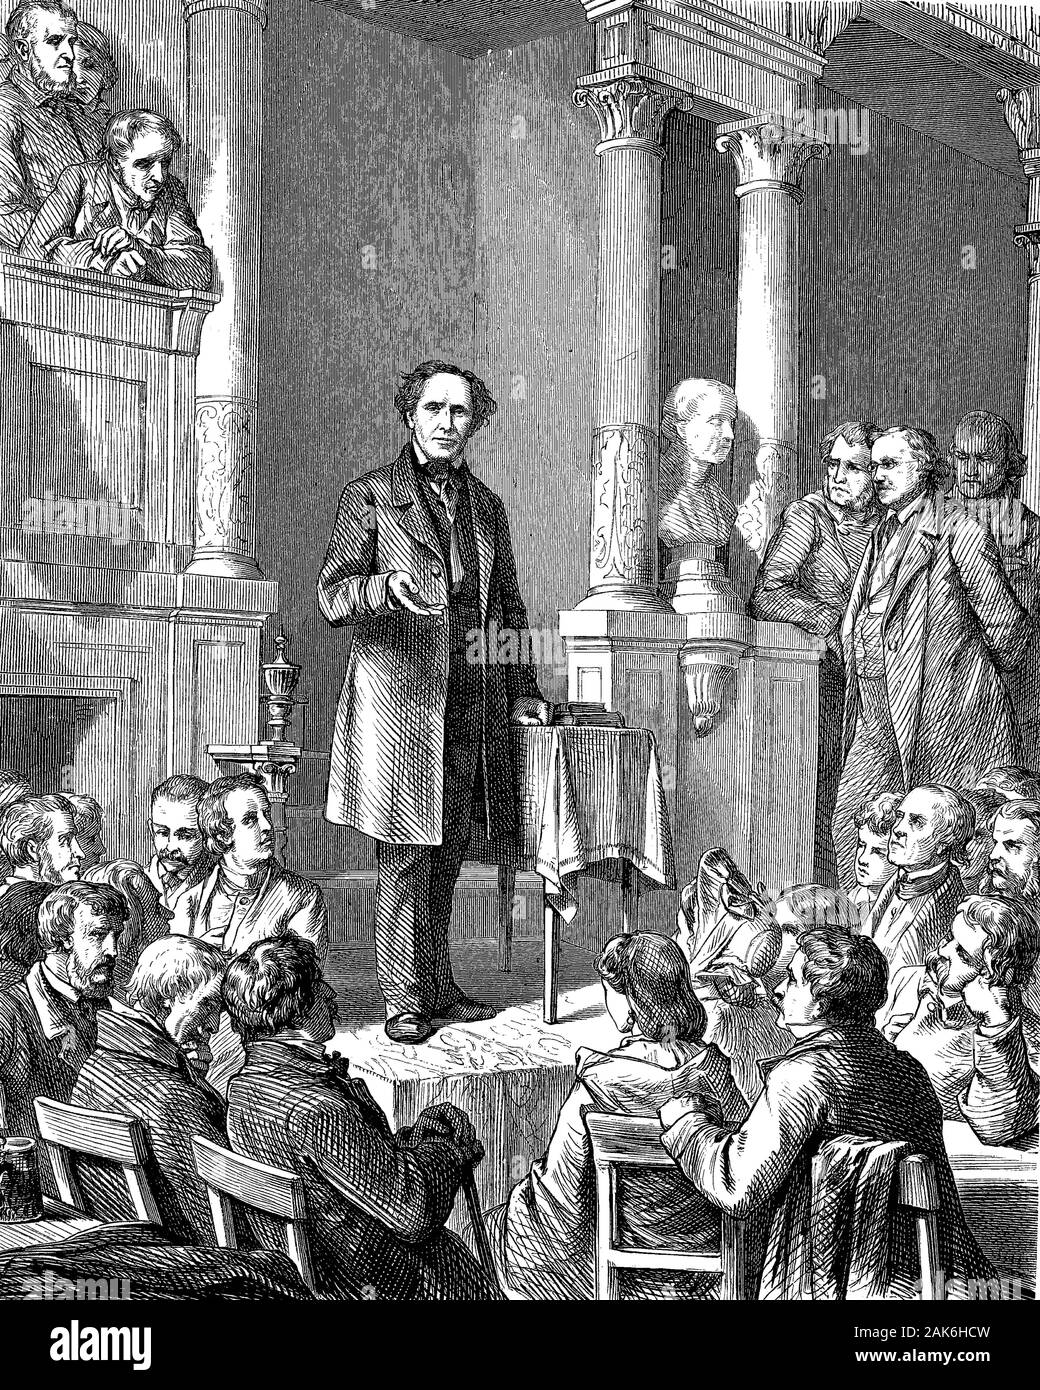 Ludwig Würkert avant sa congrégation. Friedrich Ludwig Würkert, 1800 - 1876, était un pasteur protestant, écrivain et révolutionnaire, gravure sur bois de 1864 Banque D'Images